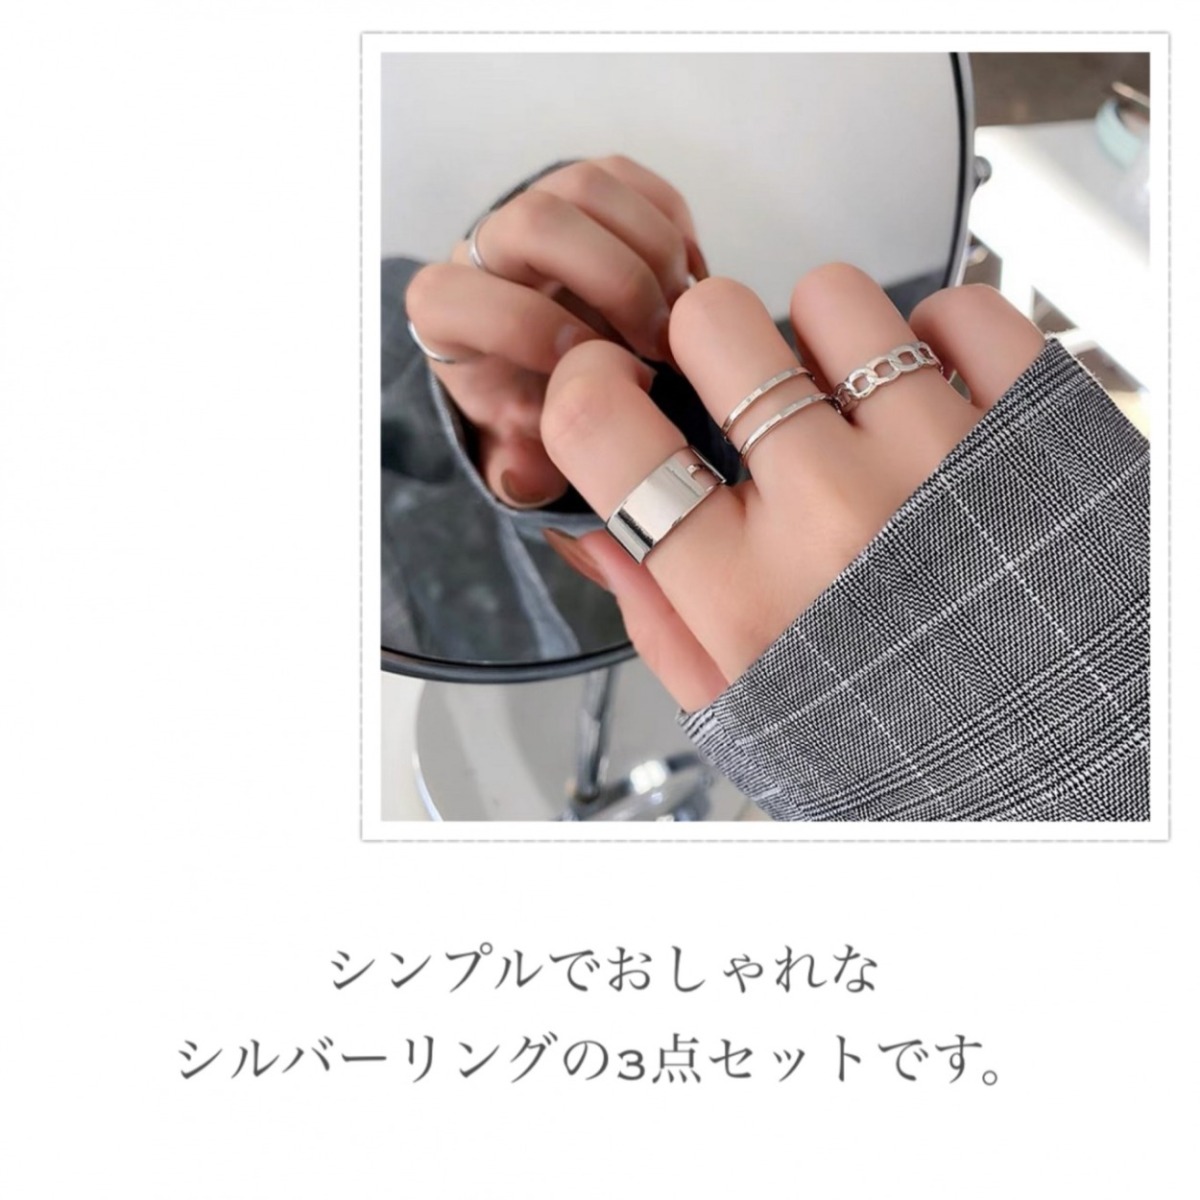 シルバーリング レディース 指輪 レディース 大きいサイズ おしゃれ シルバーリング 指輪 メンズ フリーサイズ セット リング サイズ調整  ユニセックス 男女兼用 :ms009:M's SORELLE 通販 